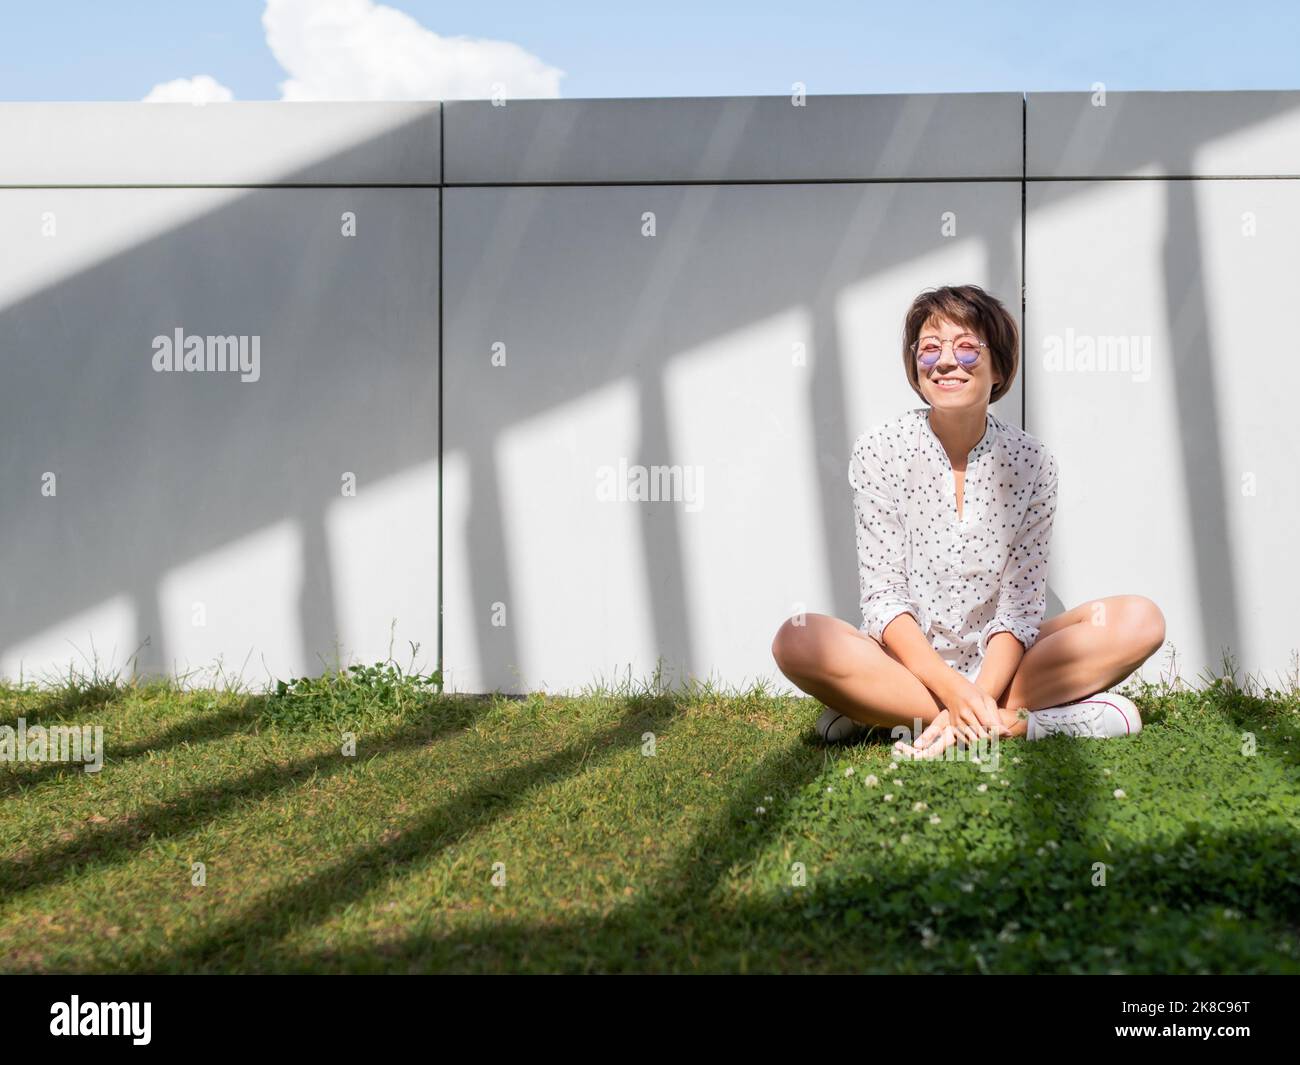 Lächelnde Frau in farbenfroher Sonnenbrille ruht sich auf dem Rasen im Stadtpark aus. Natur in der Stadt. Entspannen Sie sich nach der Arbeit im Freien. Sommerliche Stimmung. Stockfoto